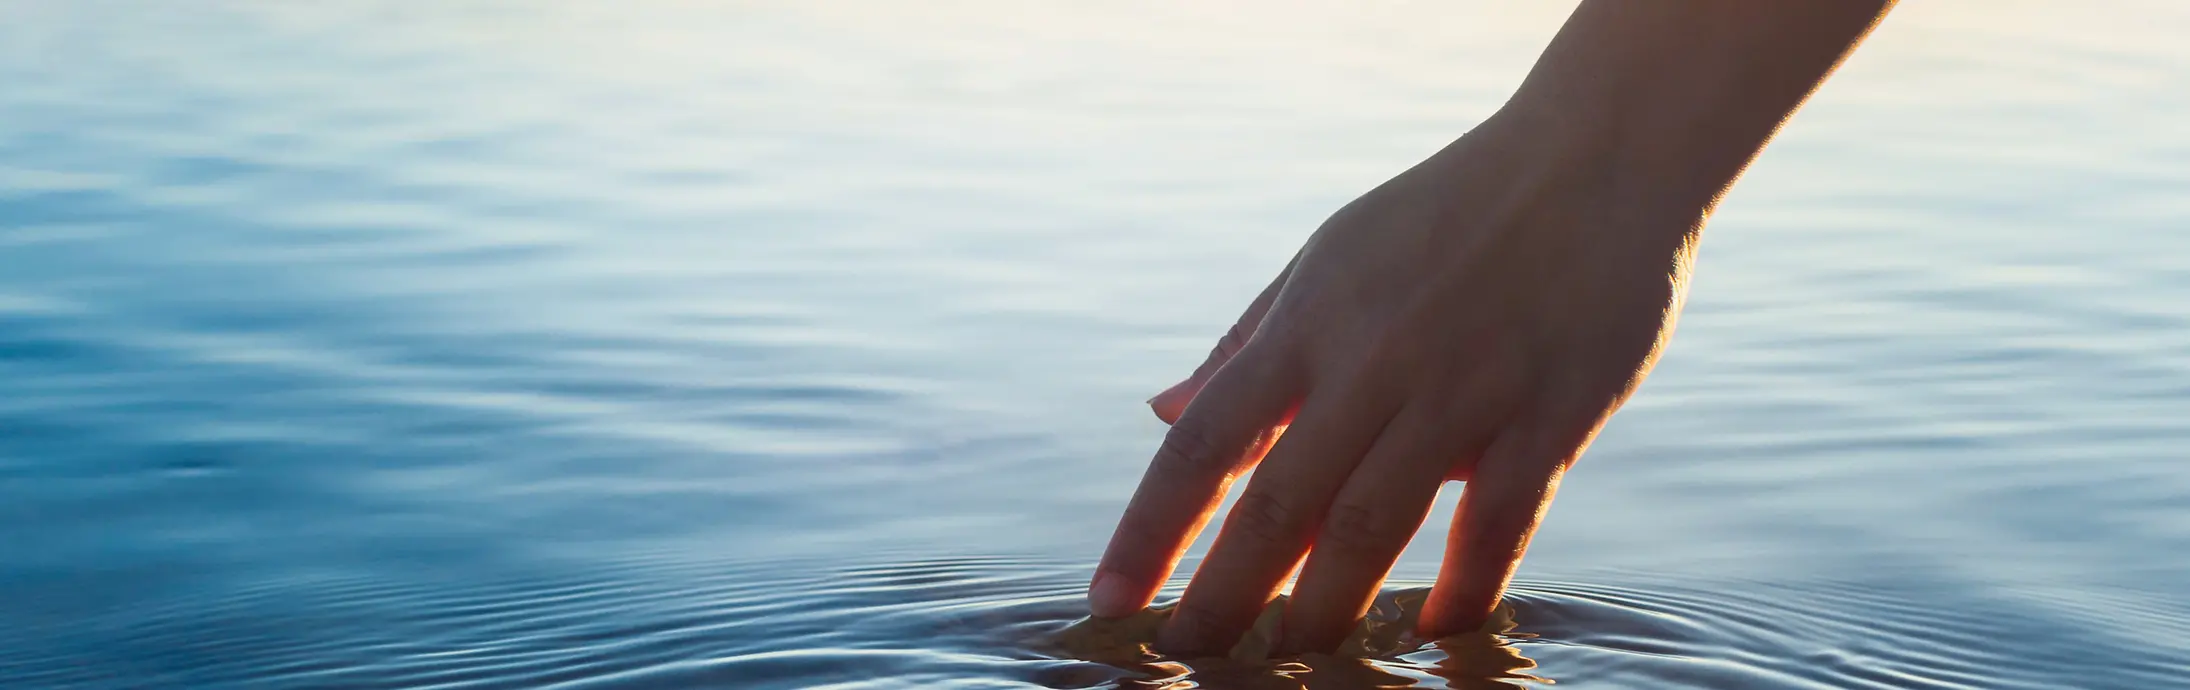 Roka se dotika mirne vodne gladine pred obzorjem